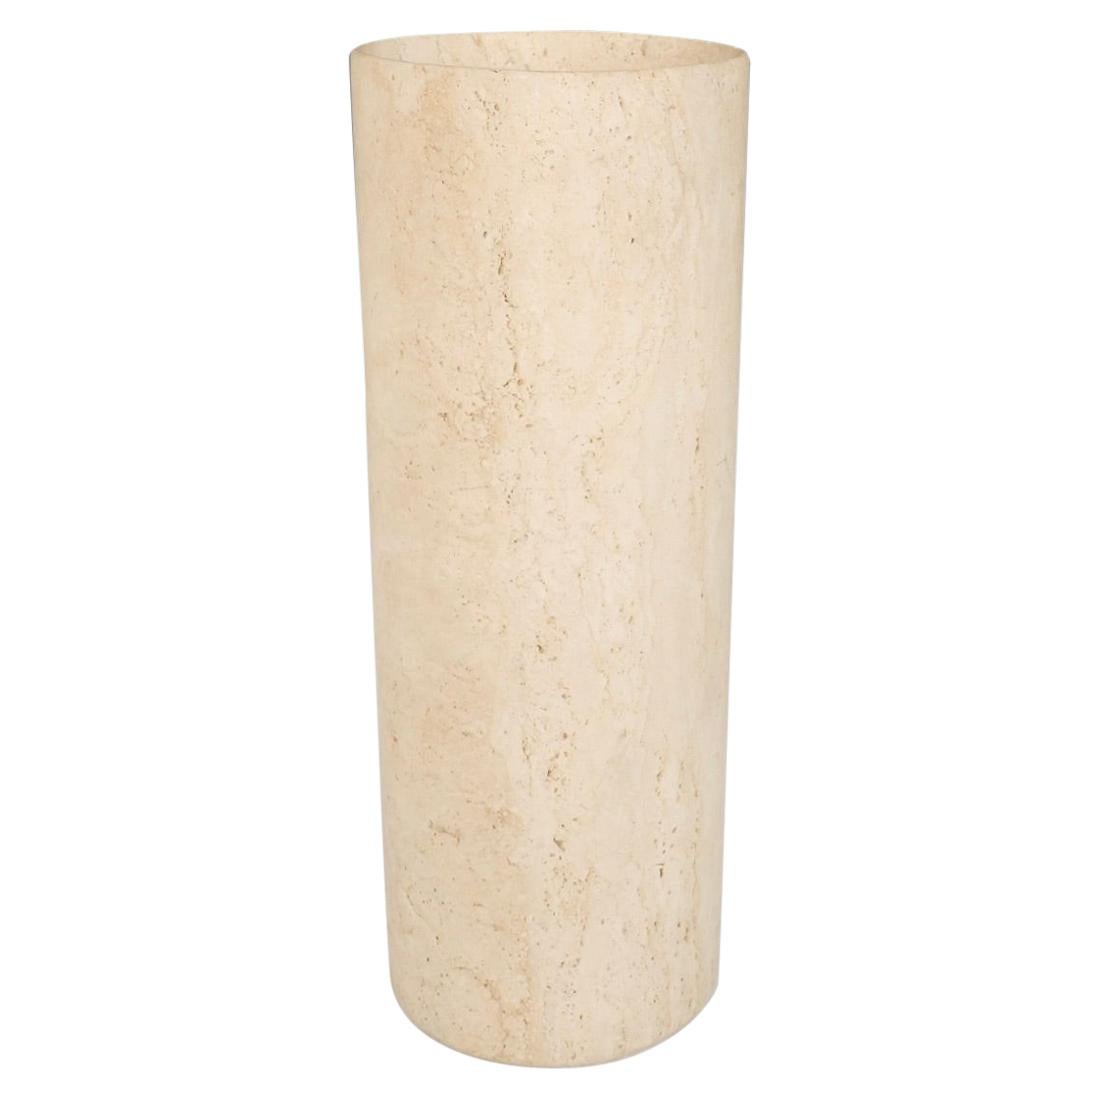 Zylinder-Bodenvase oder Pflanzgefäß aus Travertinmarmor